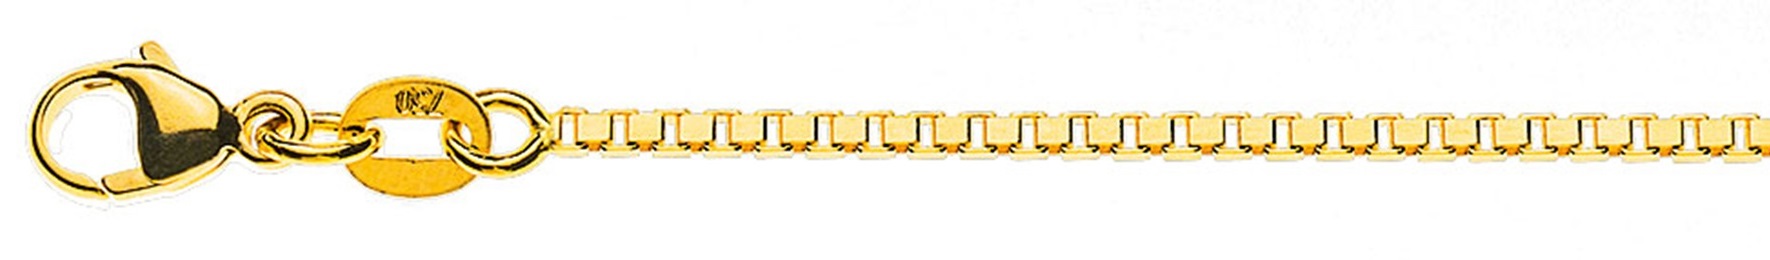 AURONOS Prestige Halskette Gelbgold 18K Venezianerkette diamantiert 50cm 1.4mm